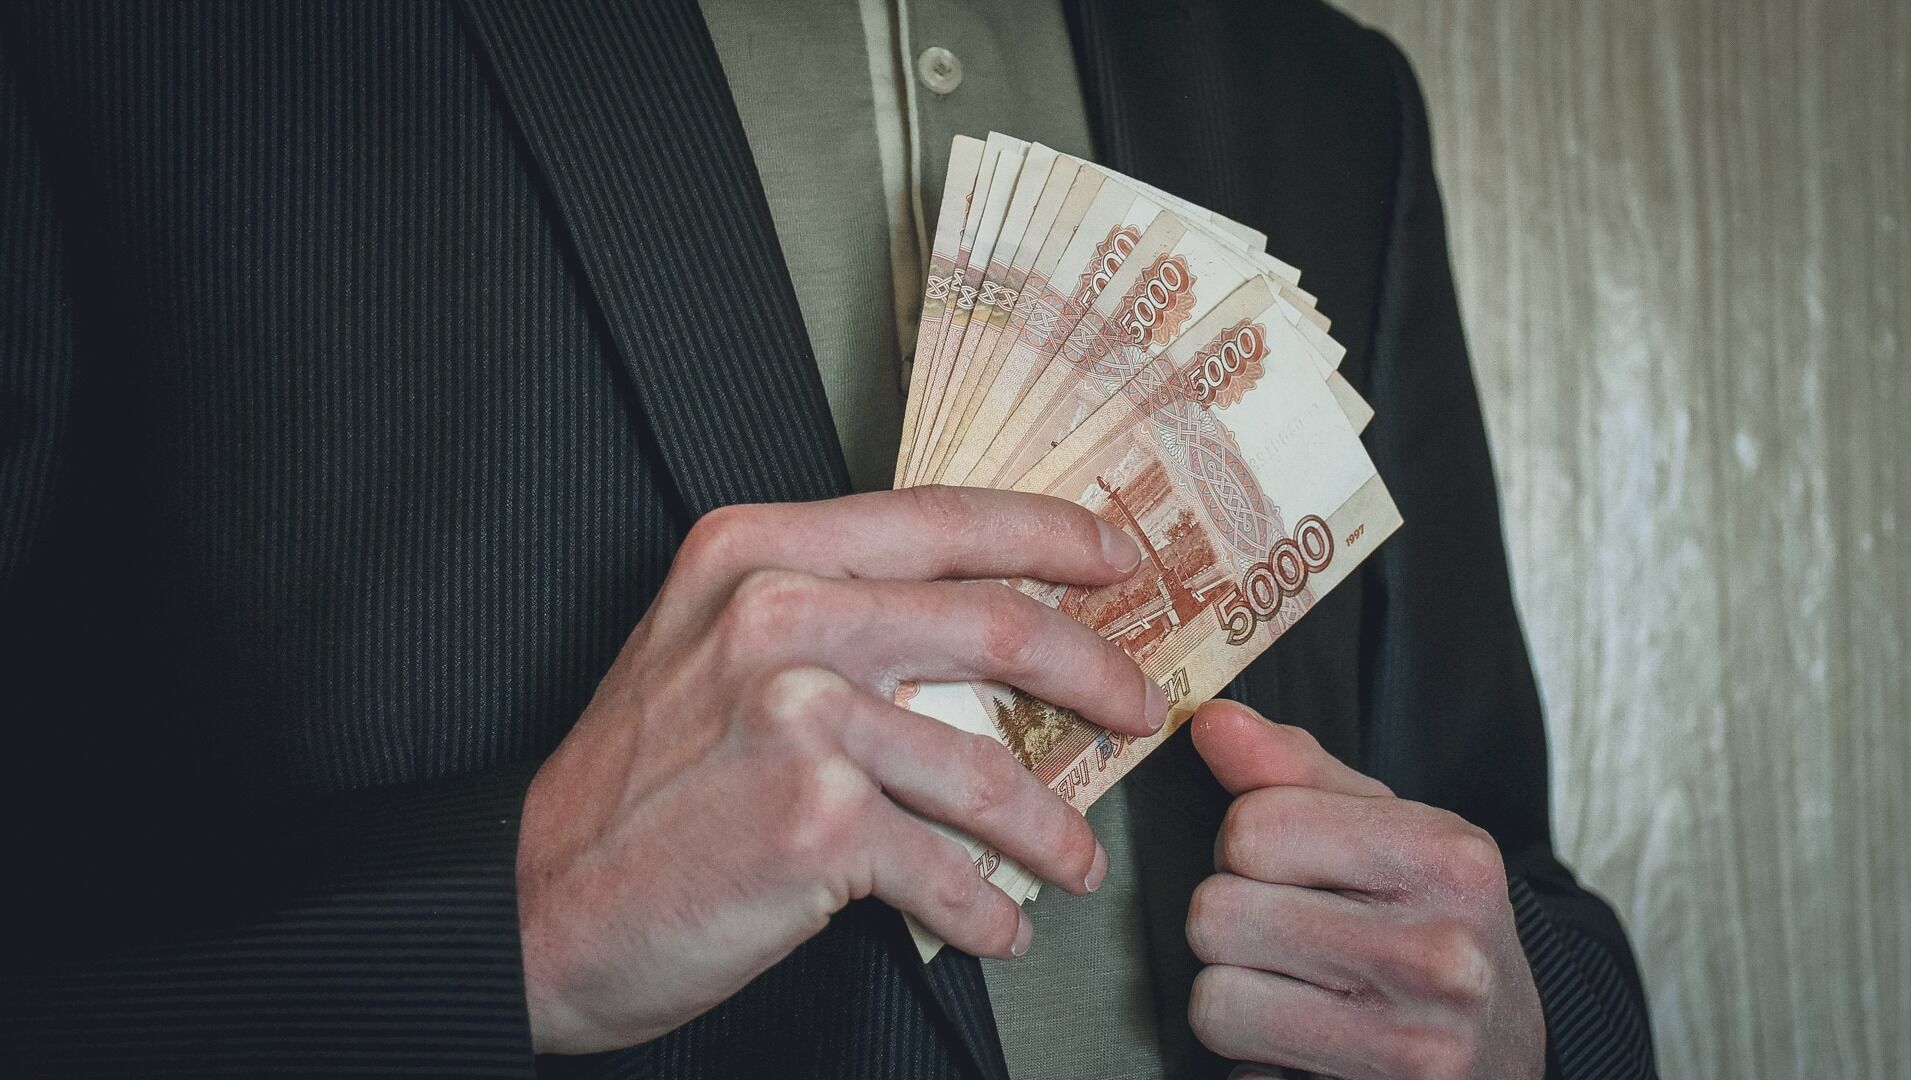 Пермский краевой суд взыскал с экс-гендиректора более 86 млн рублей ущерба